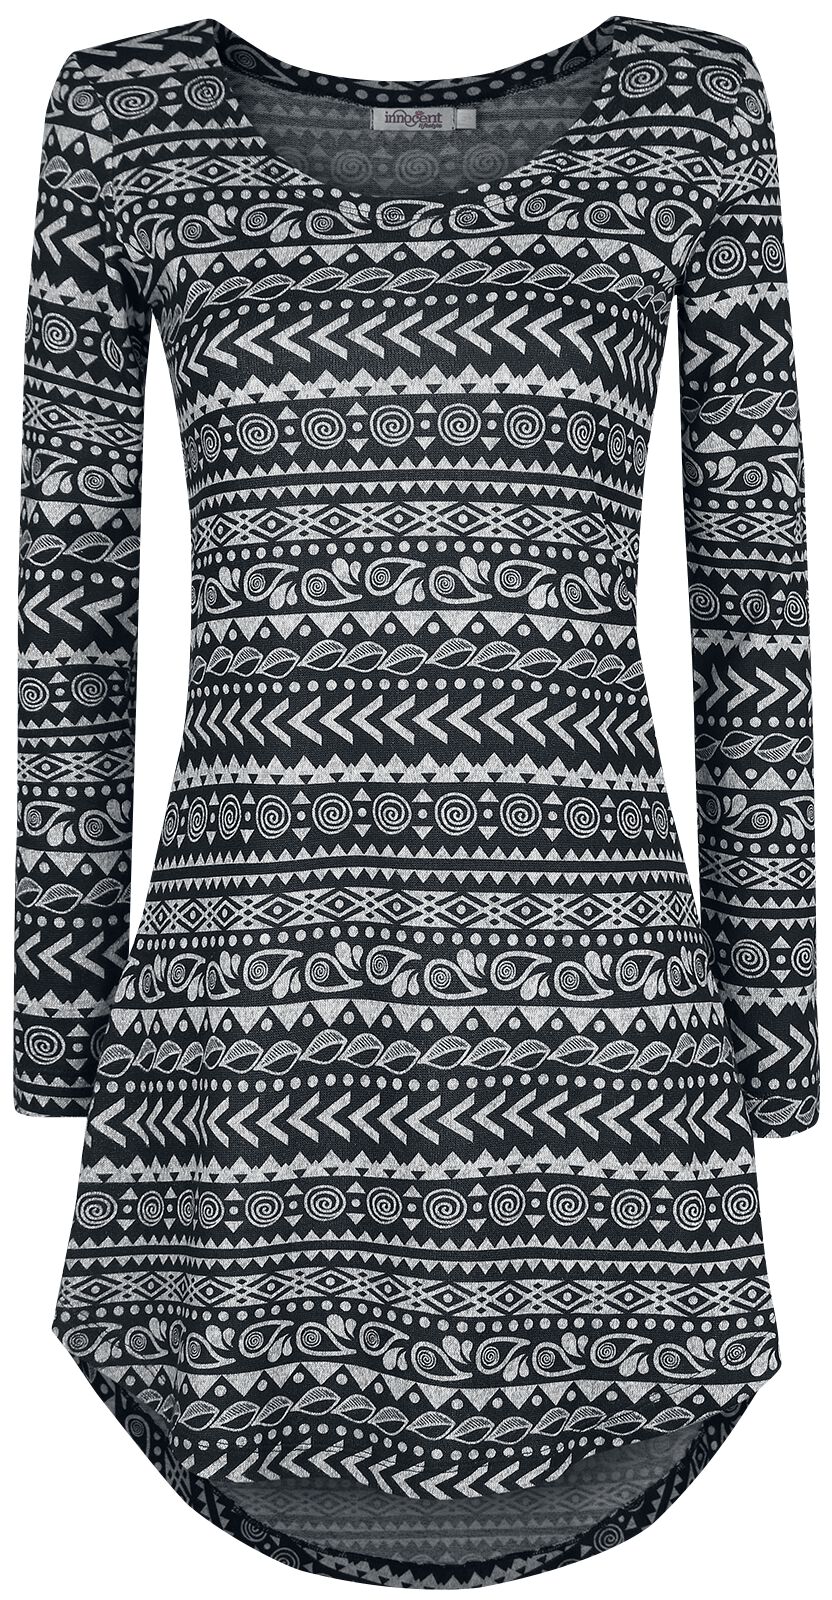 Innocent Kurzes Kleid - Winter Dress - S bis 4XL - für Damen - Größe 4XL - grau/schwarz